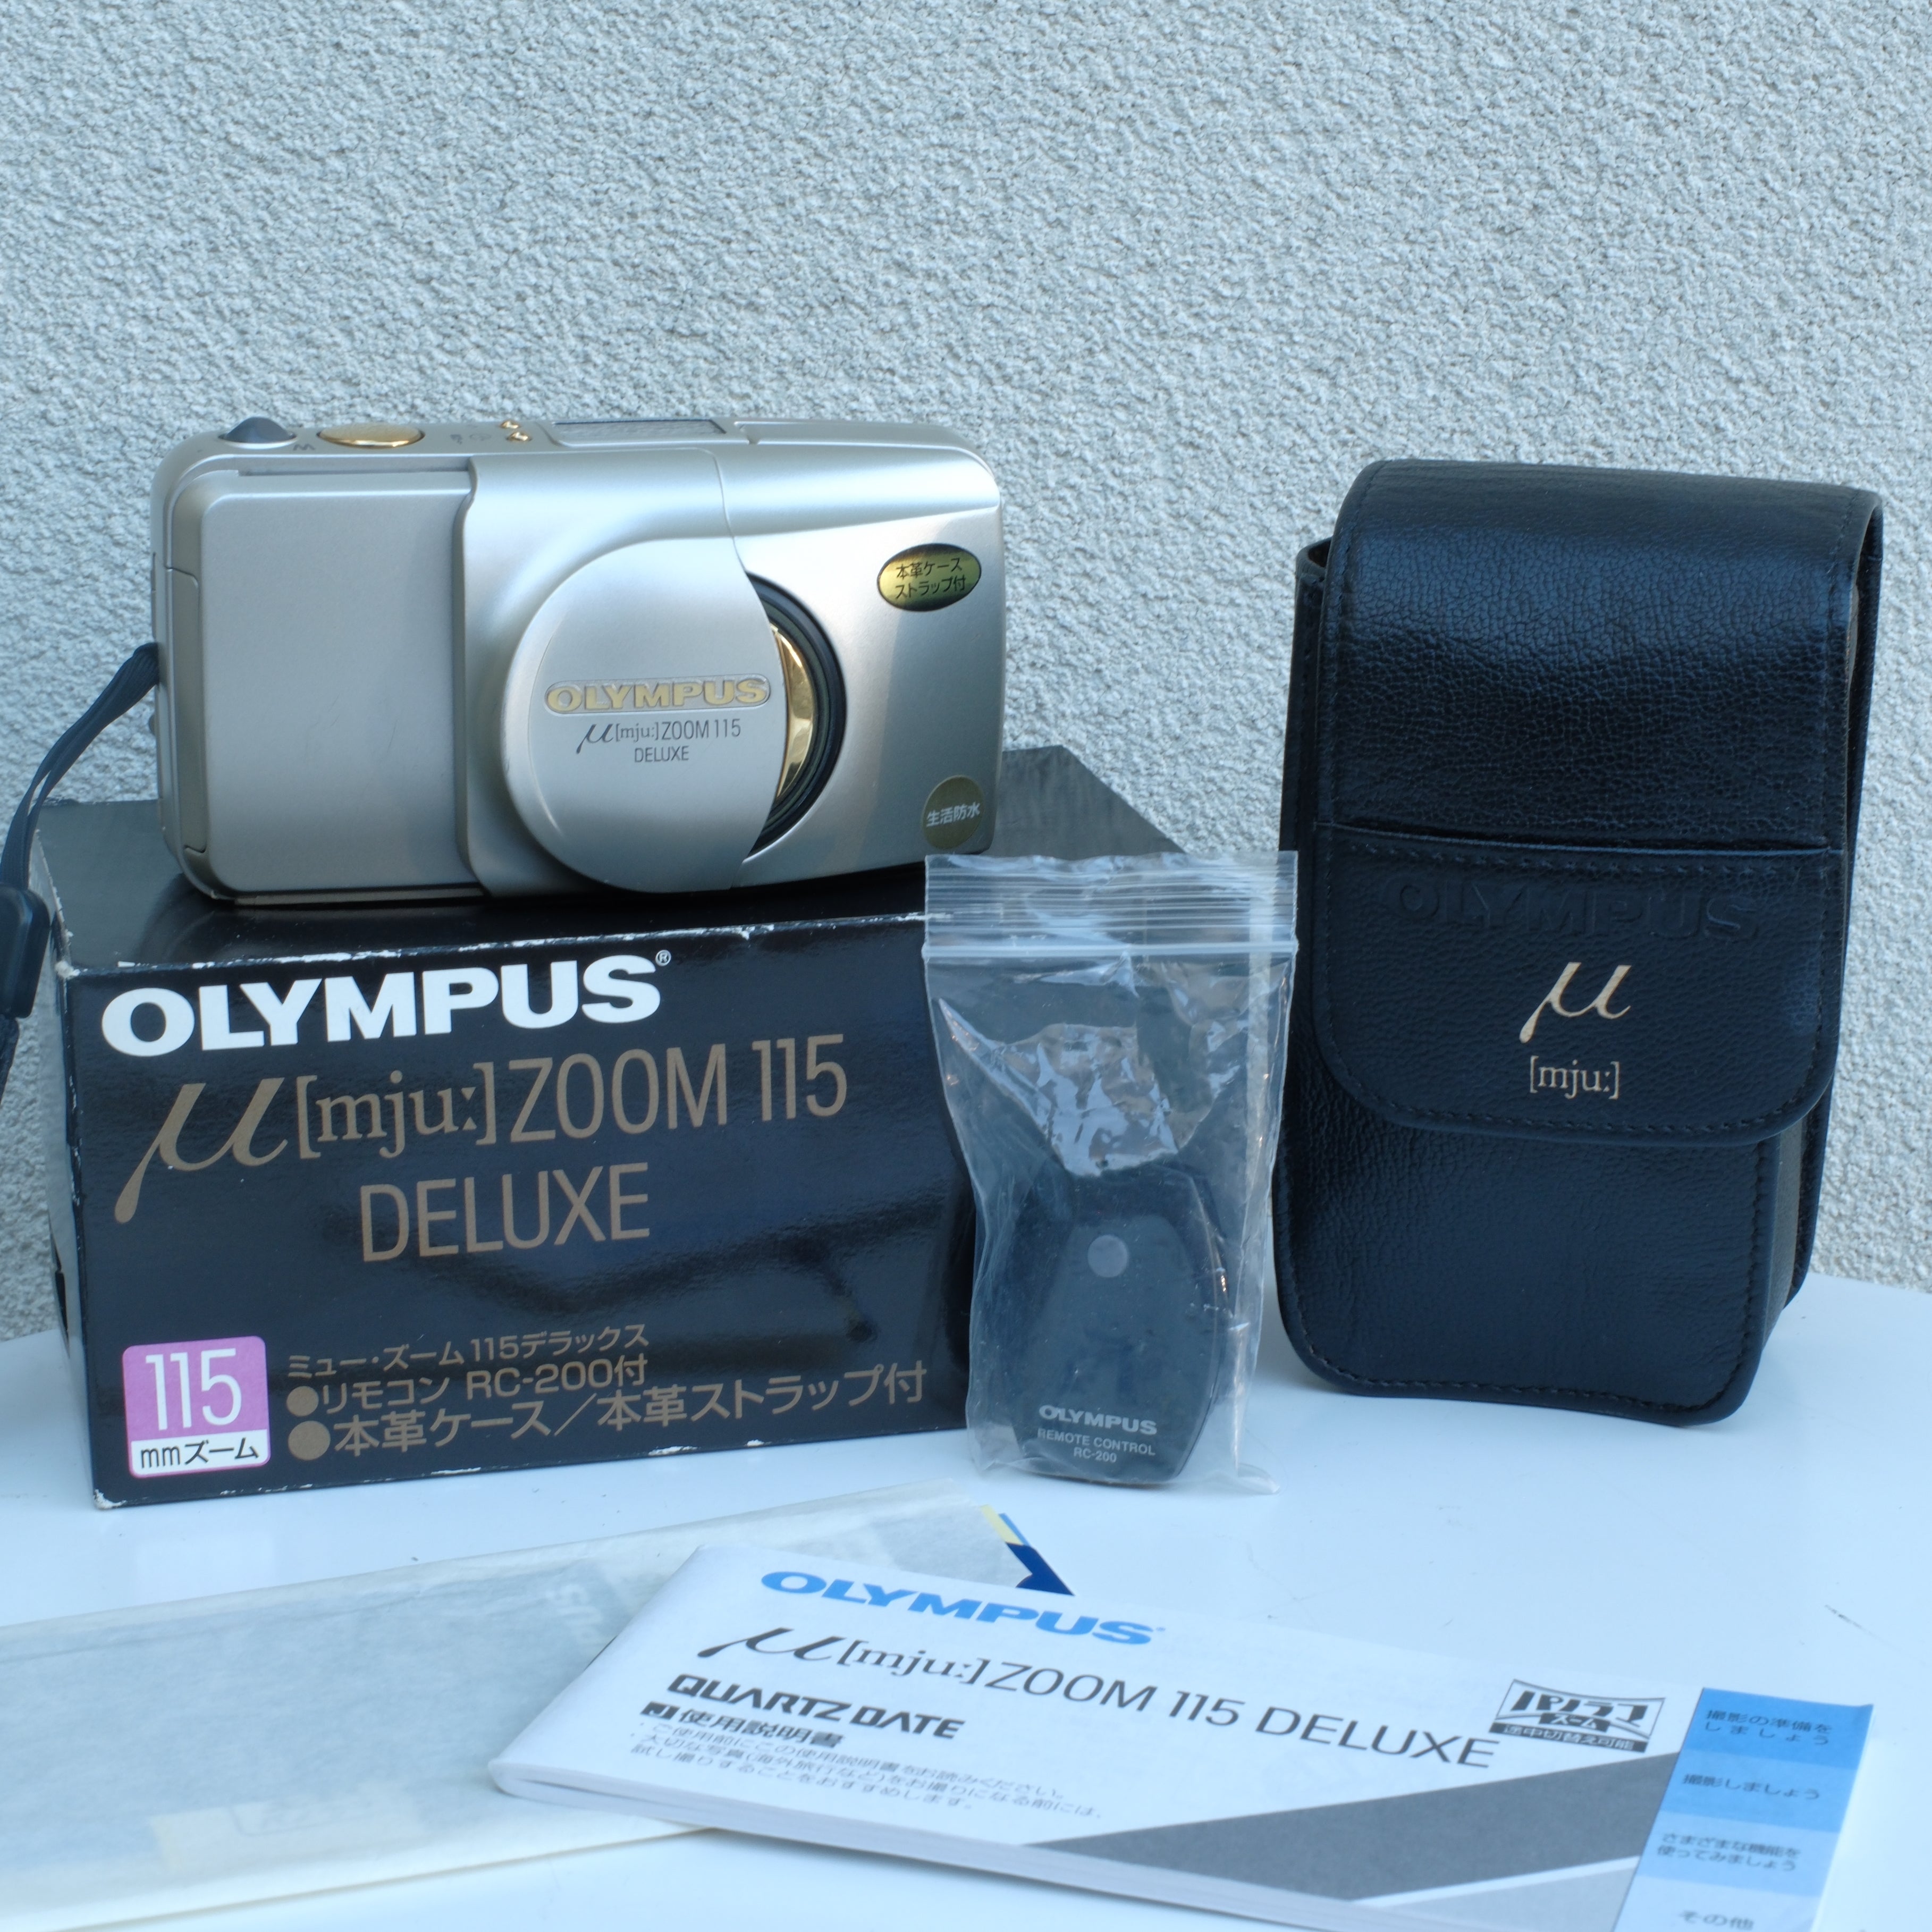 Olympus MJU Zoom 115 Deluxe